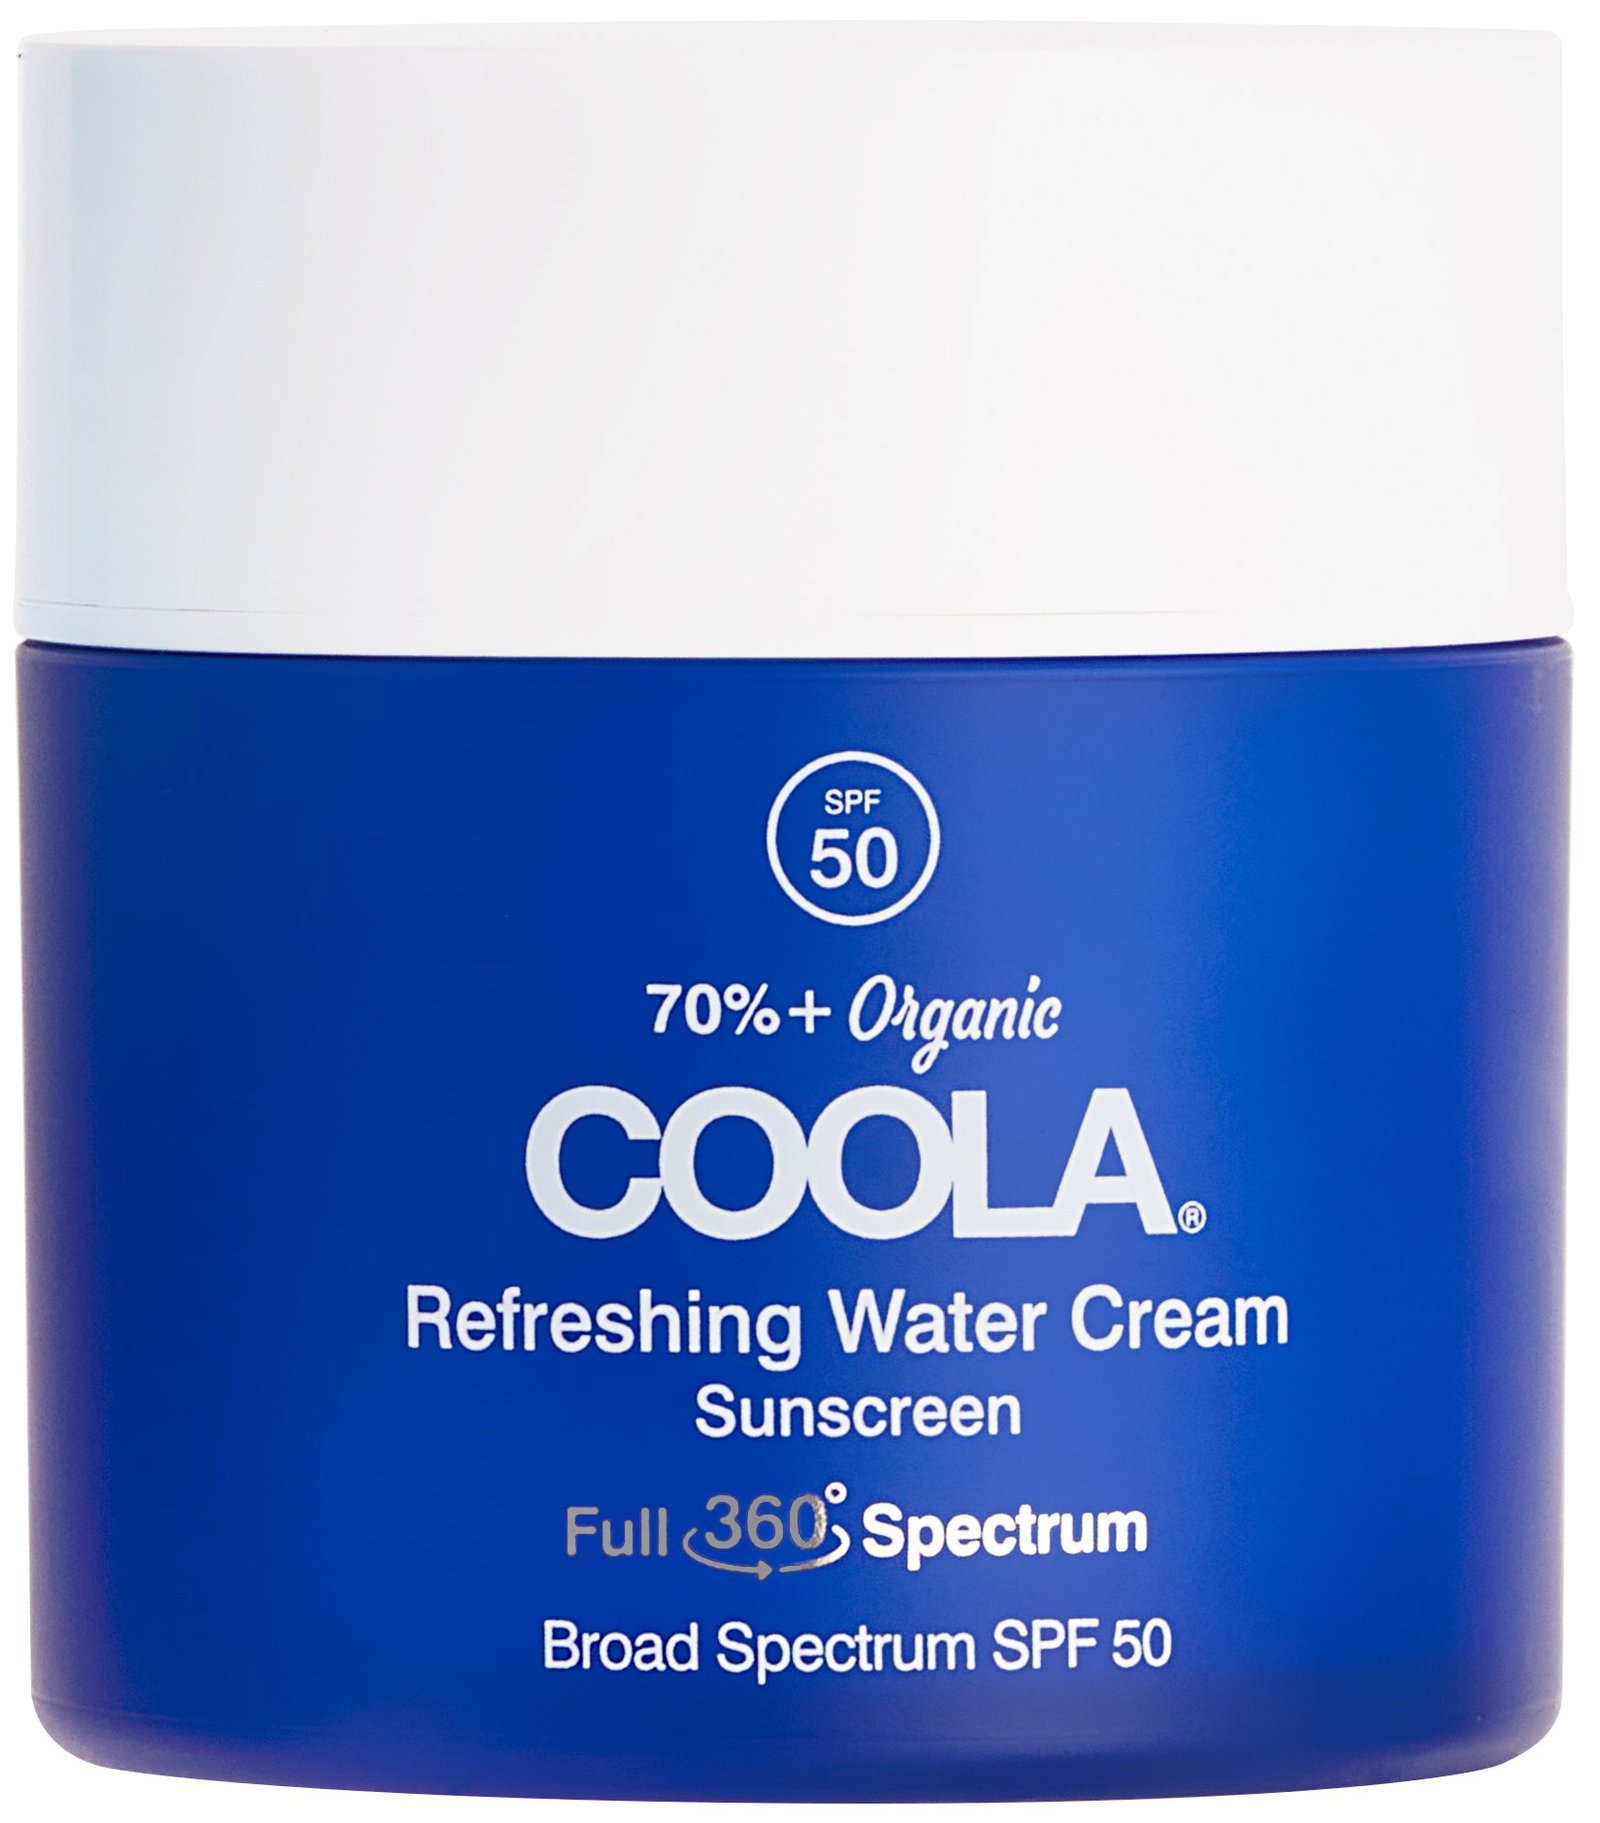 COOLA Refreshing Water Cream SPF 50 44ml